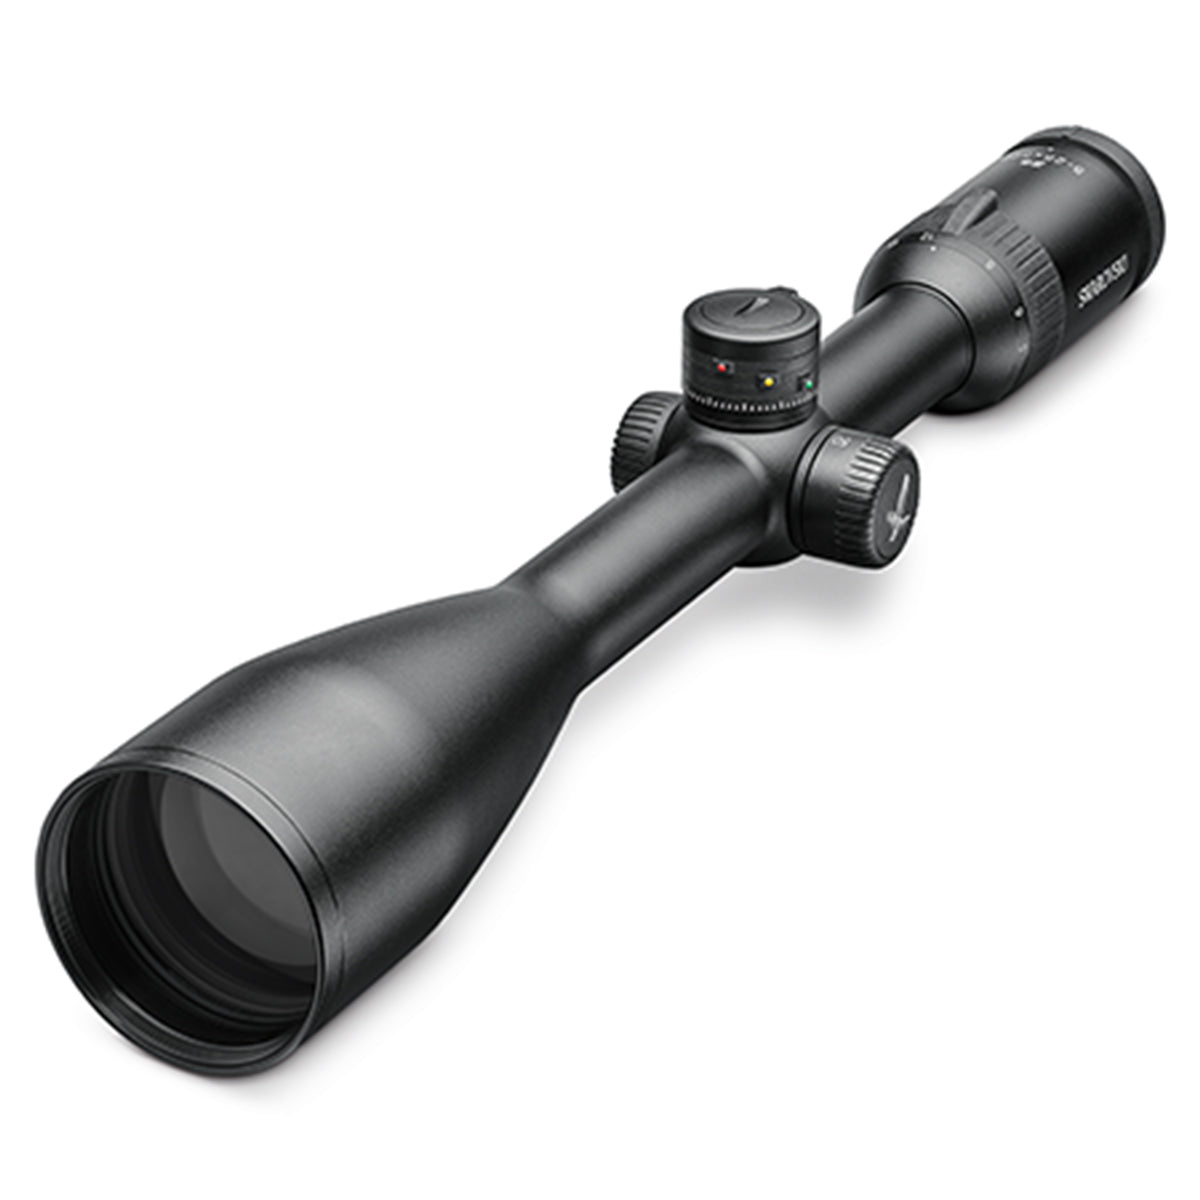 Swarovski Z5 5-25x52 P BT L Riflescope by Swarovski Optik | Optics - goHUNT Shop